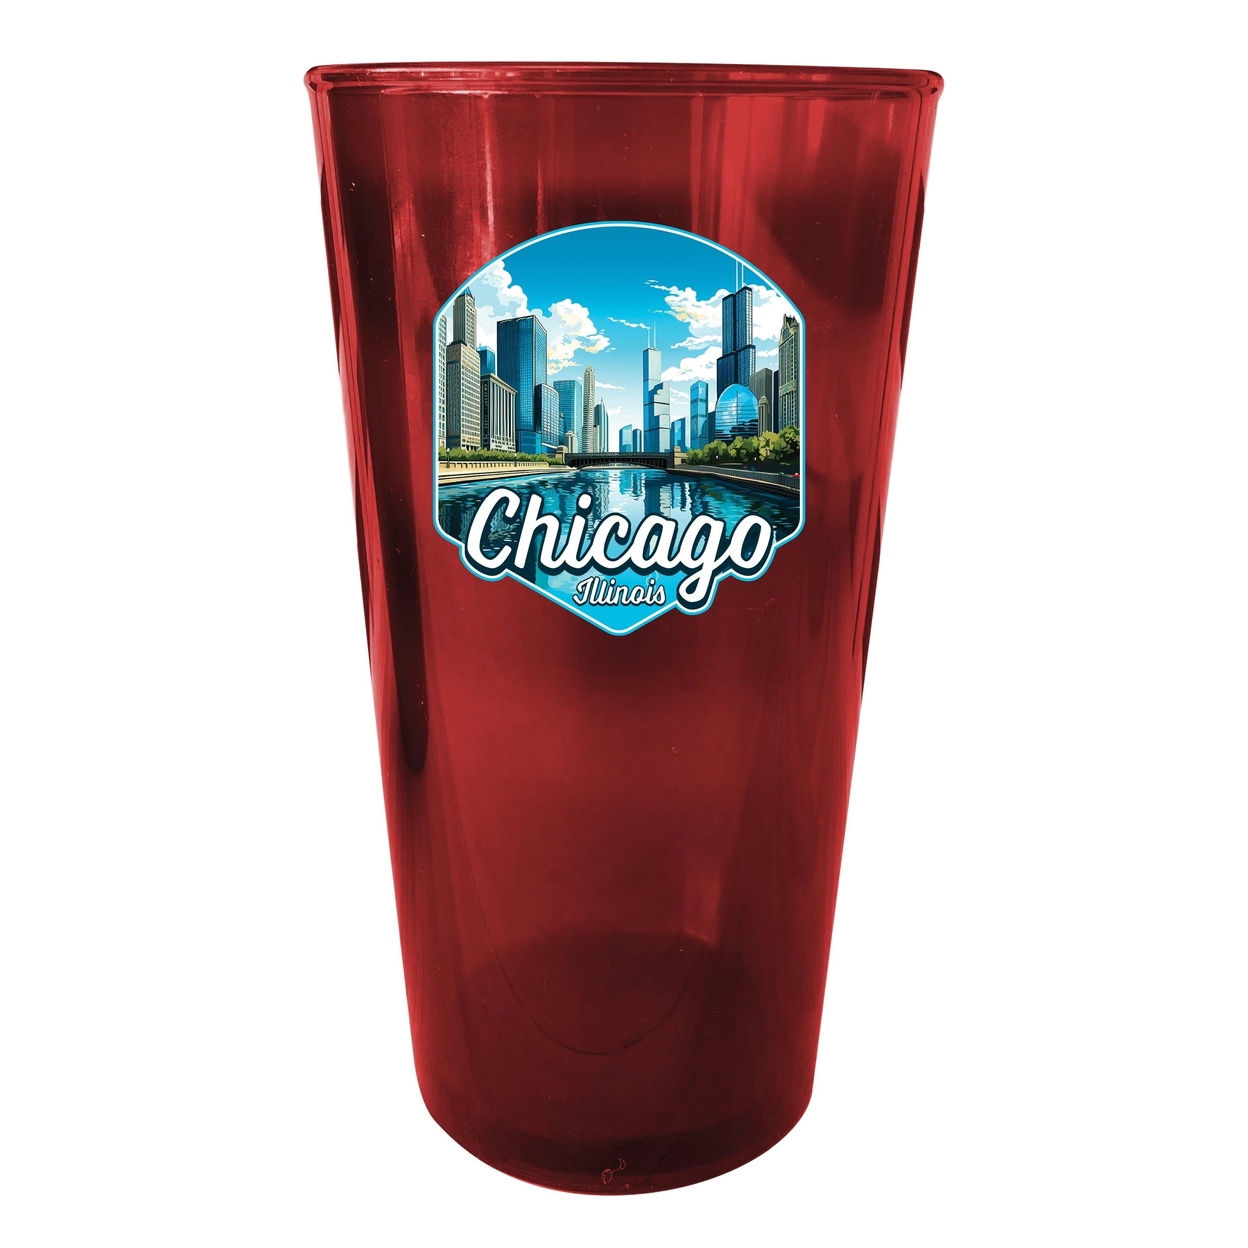 Chicago Illinois A Souvenir Plastic 16 Oz Pint - Red,,4-Pack